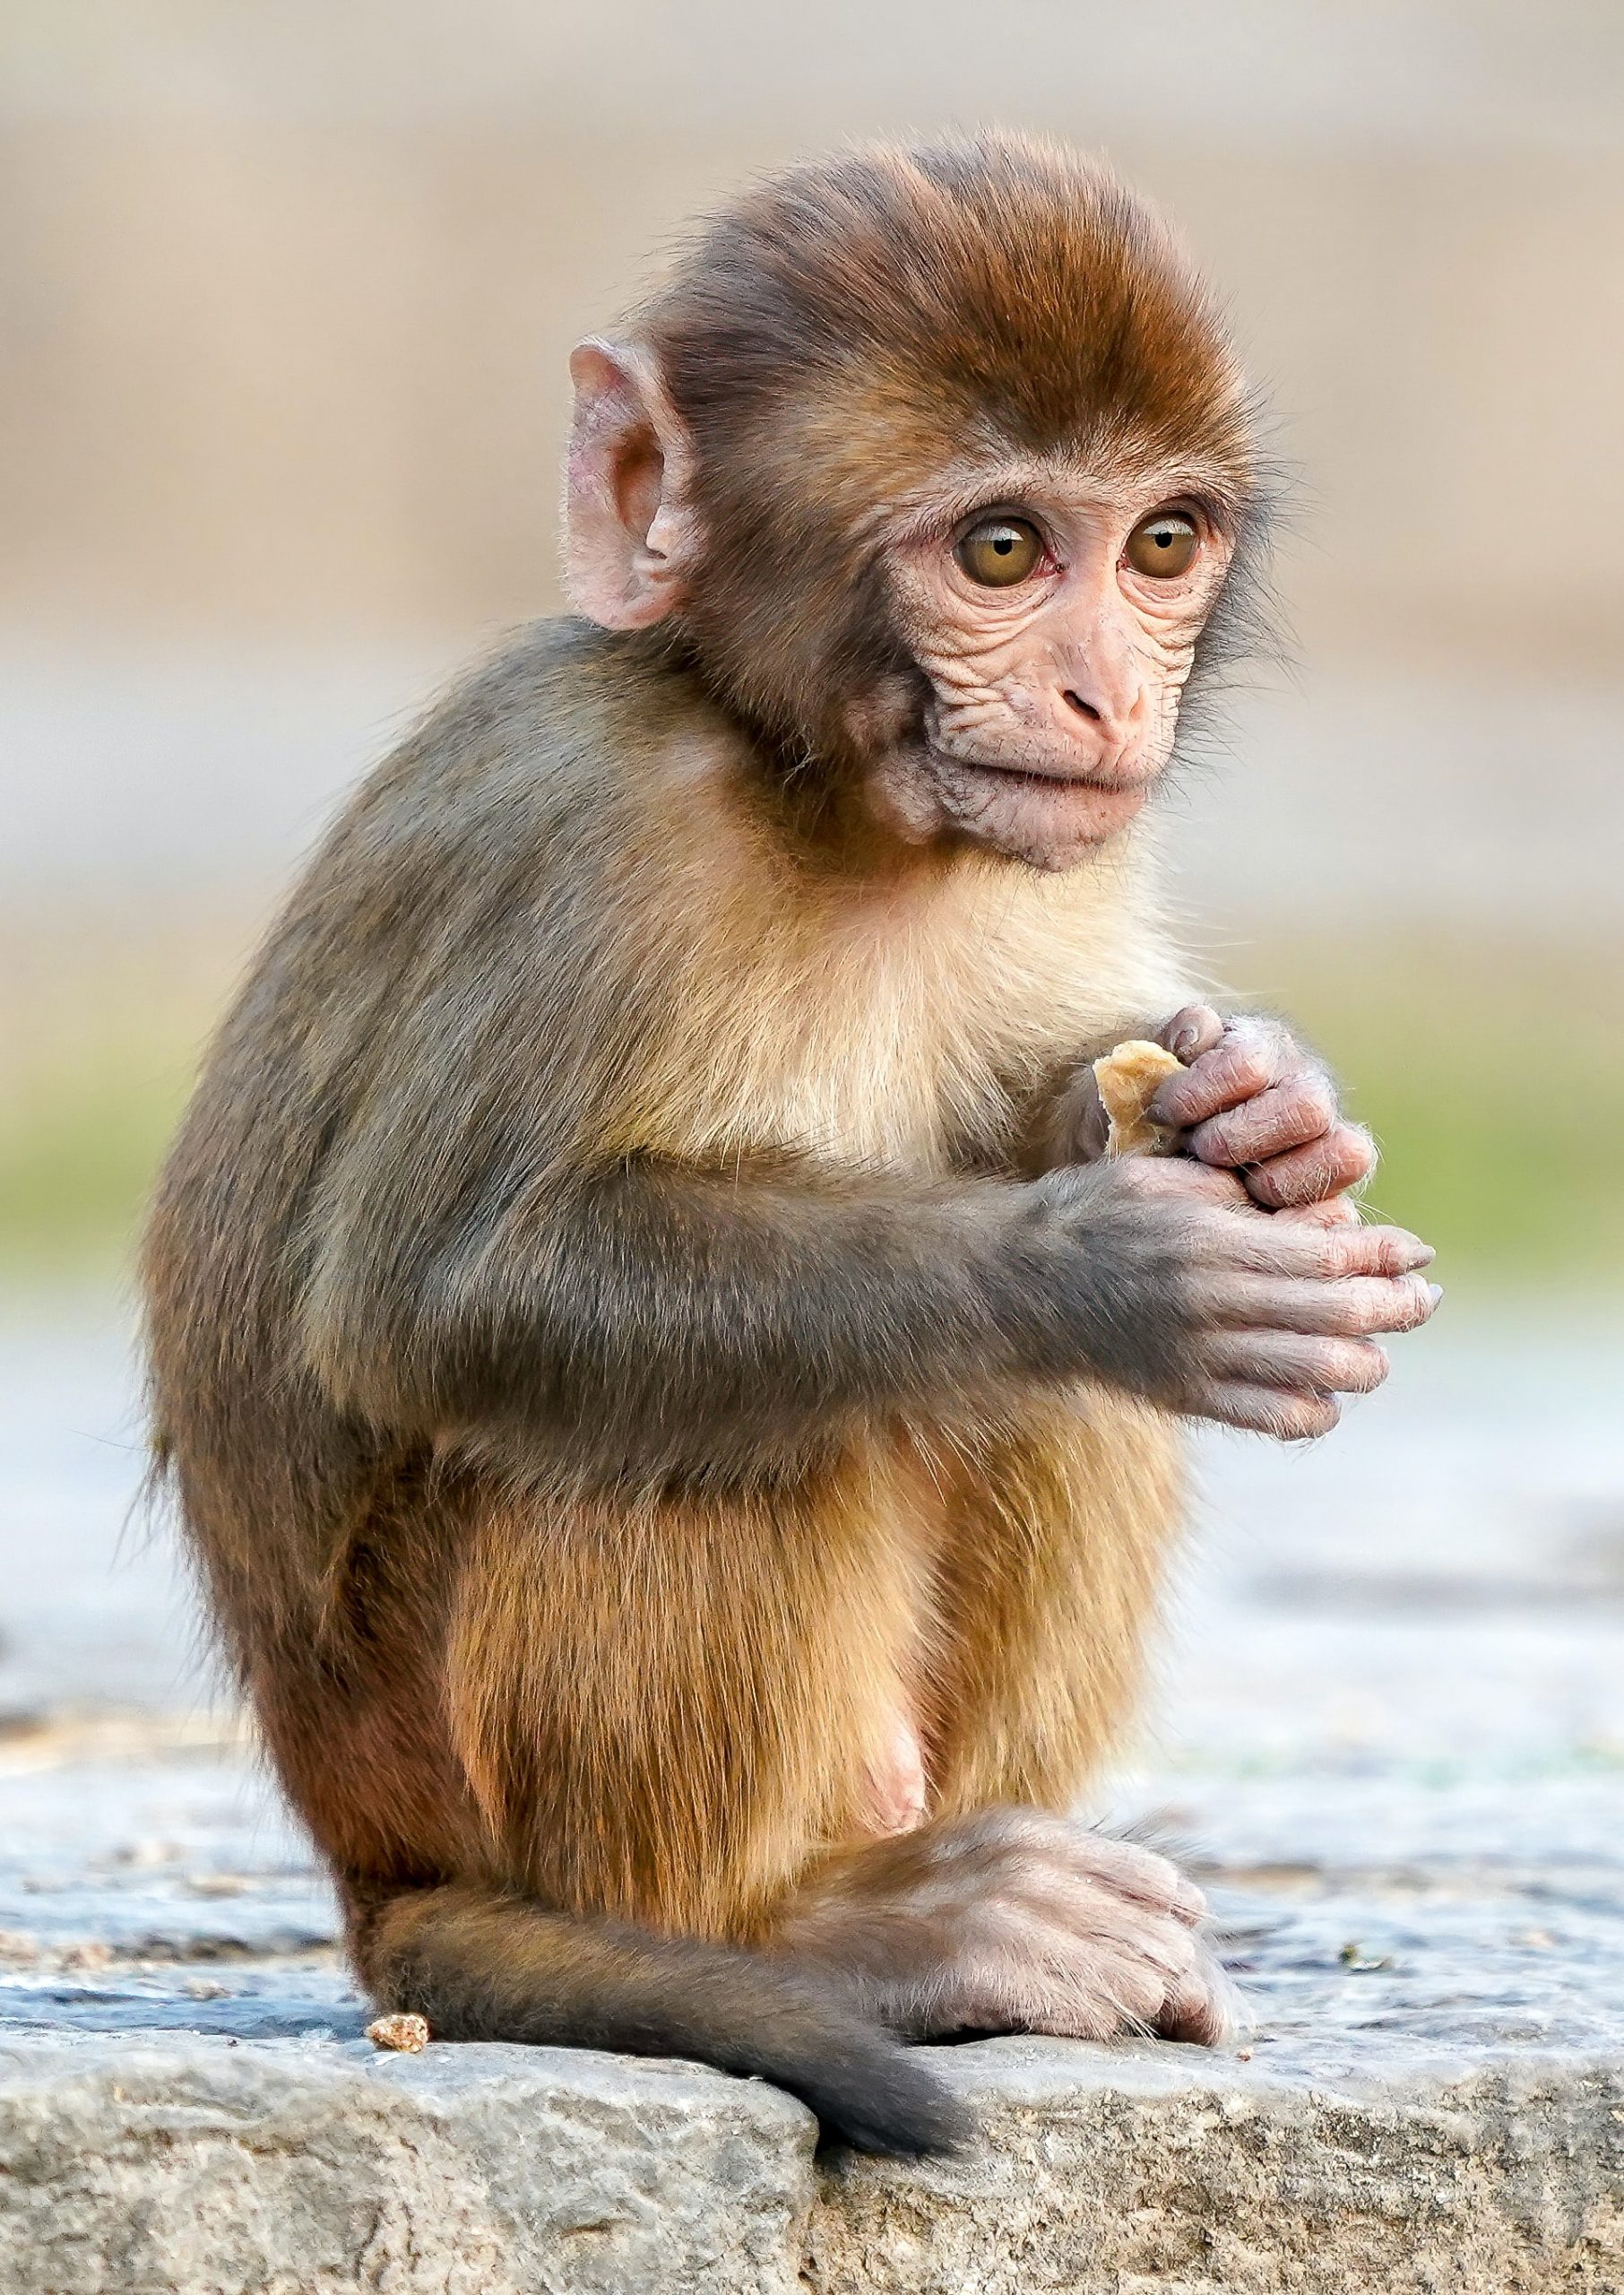 Chia sẻ 101+ hình ảnh con khỉ đẹp nhất thế giới #3D chất lượng cao